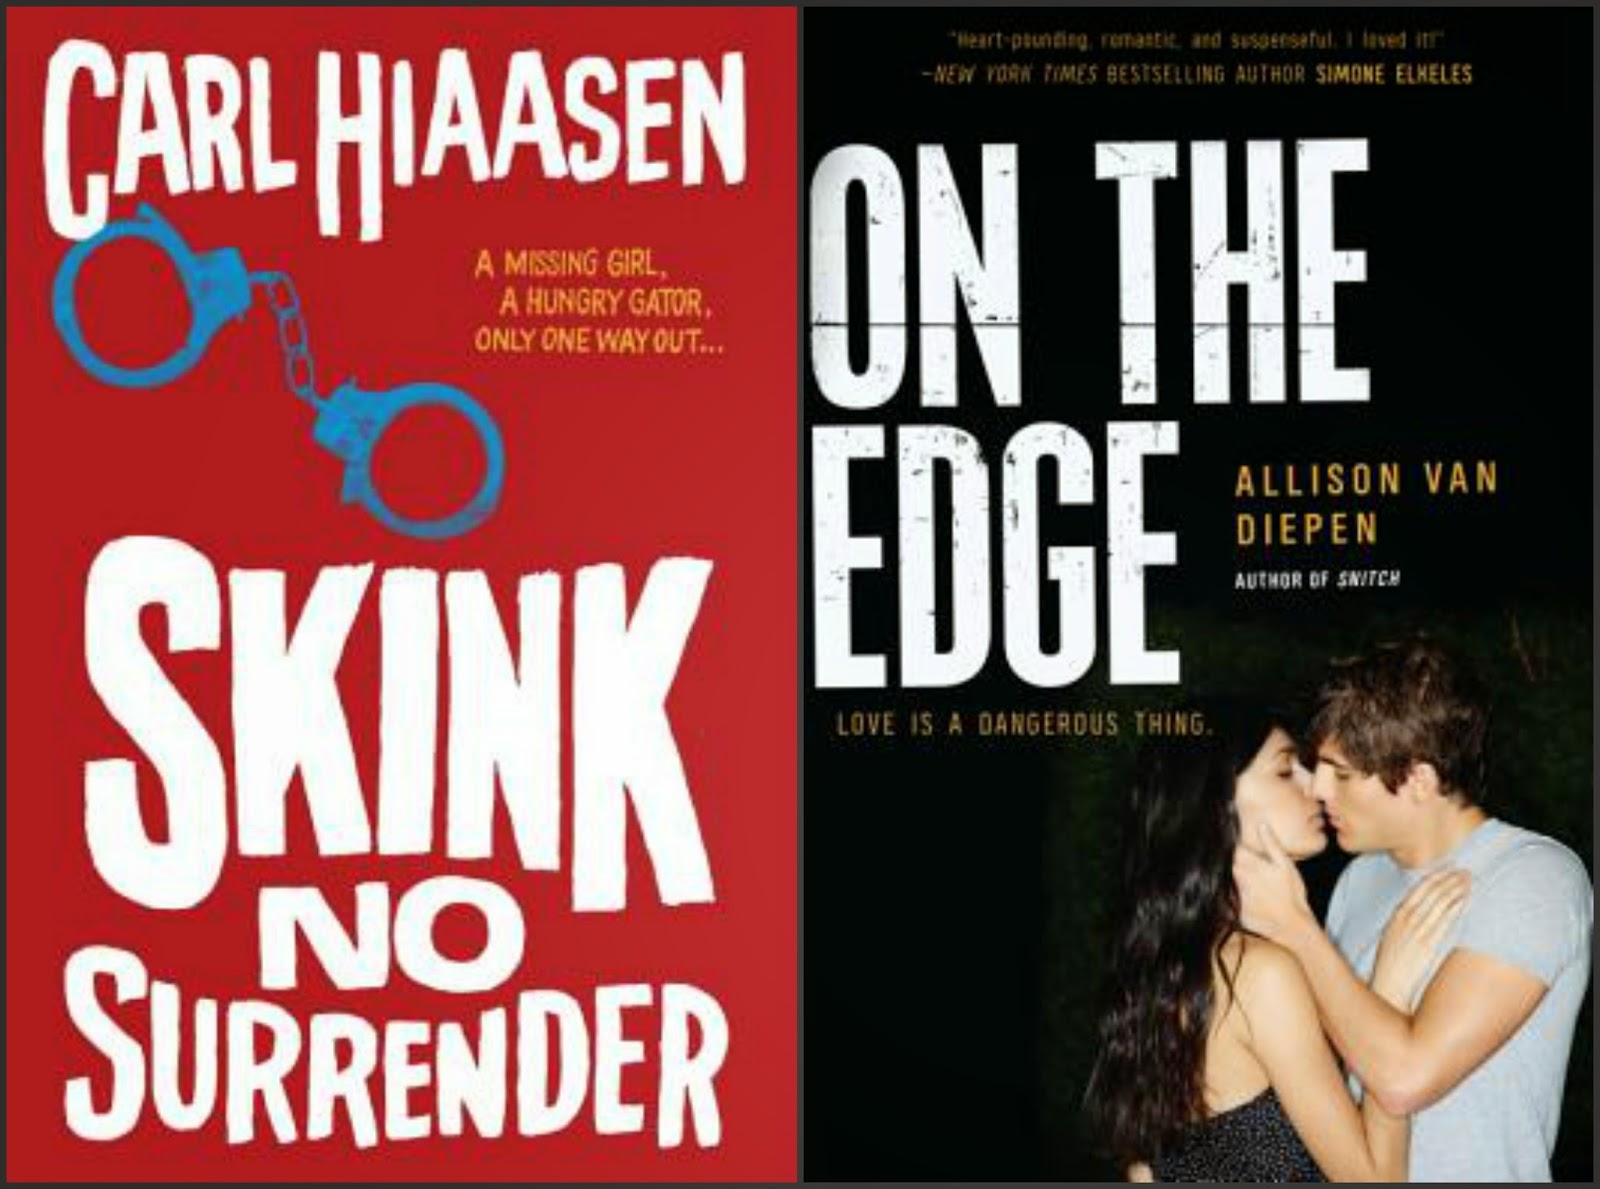 Skink--No Surrender by Carl Hiaasen; On the Edge by Allison Van Diepen